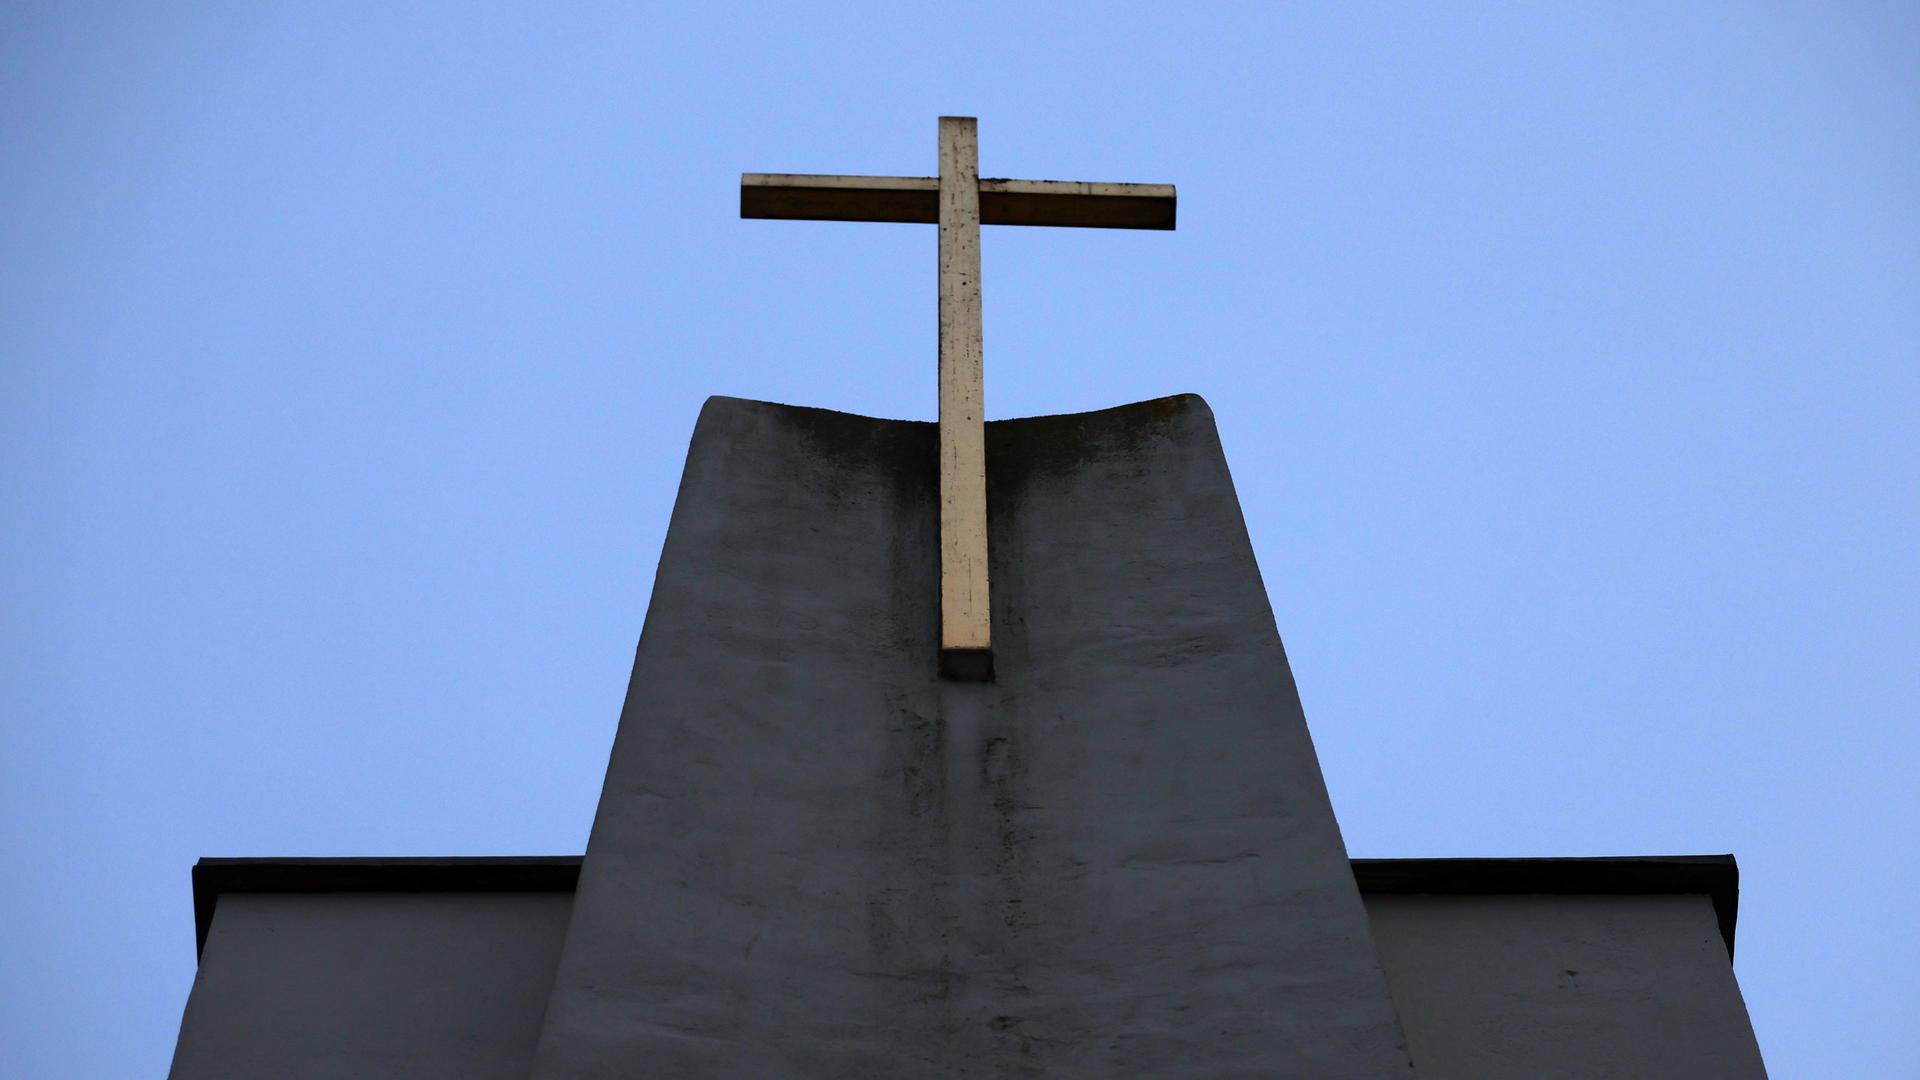 Die katholische Christuskirche in München. Ein Kreuz ist auf der Spitze von der Kirche zu sehen.